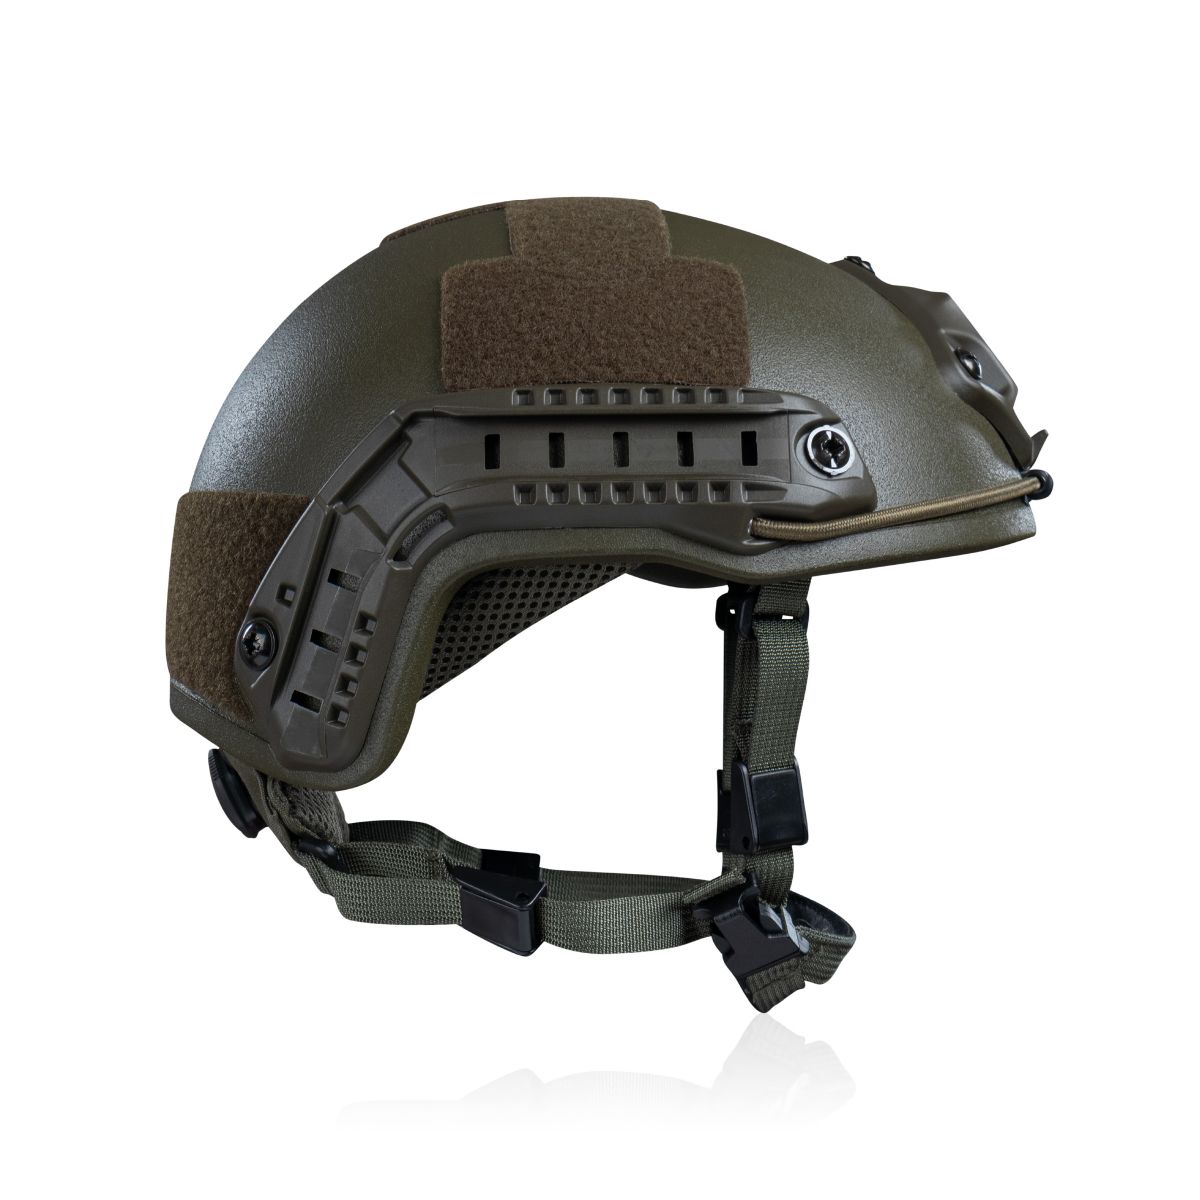 Кевларовый шлем HP-05 (Maskpol) тип "high cut". Производитель: Польша. Олива. (L) 13